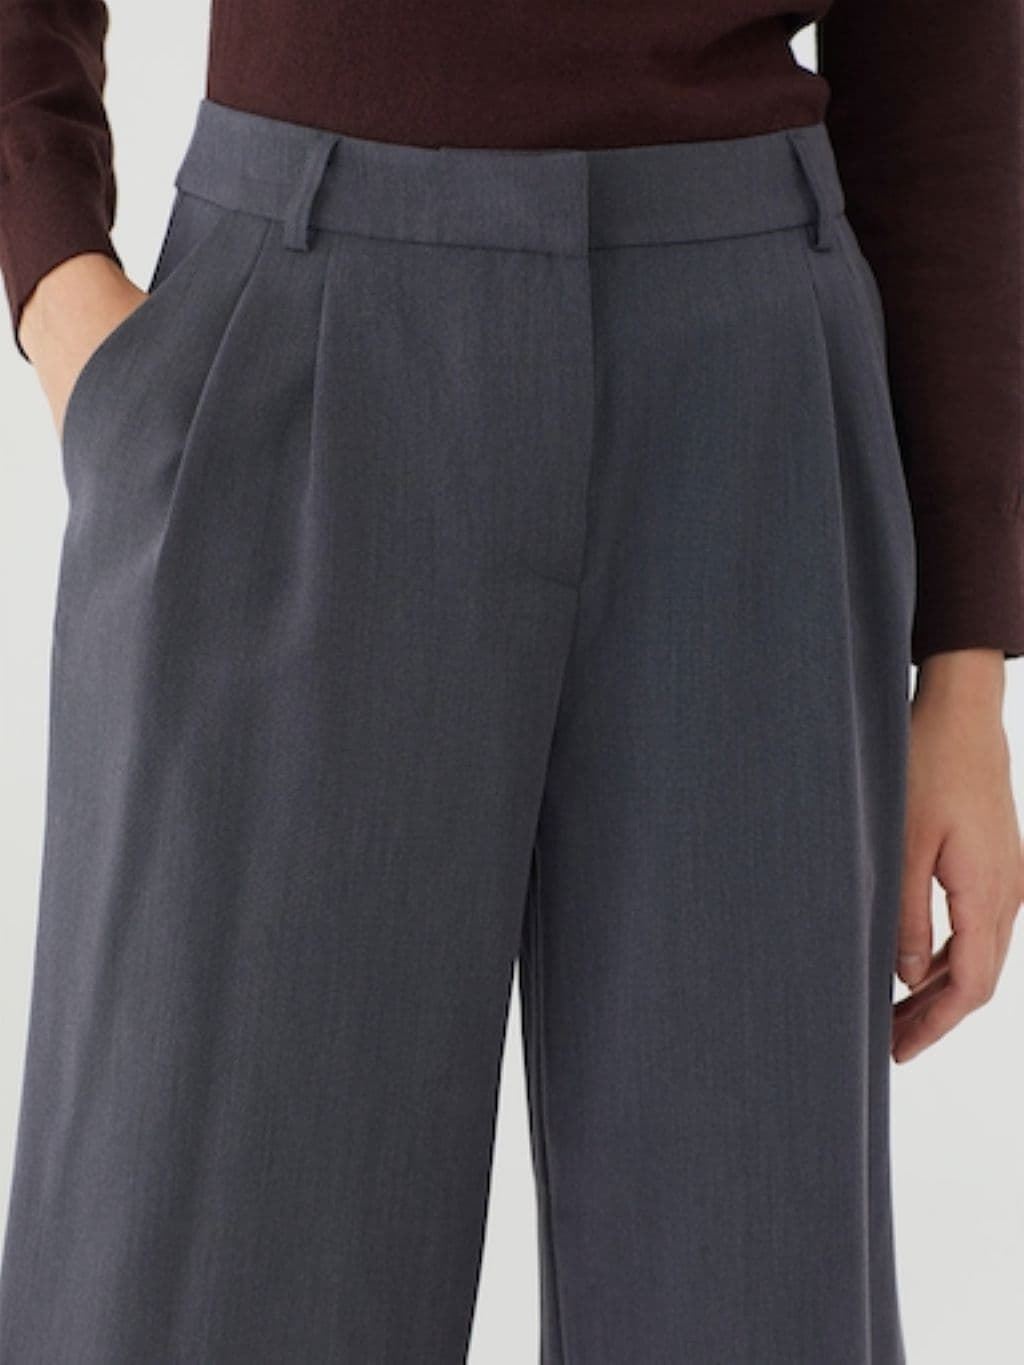 Pantalón culotte pinzas - Imagen 3